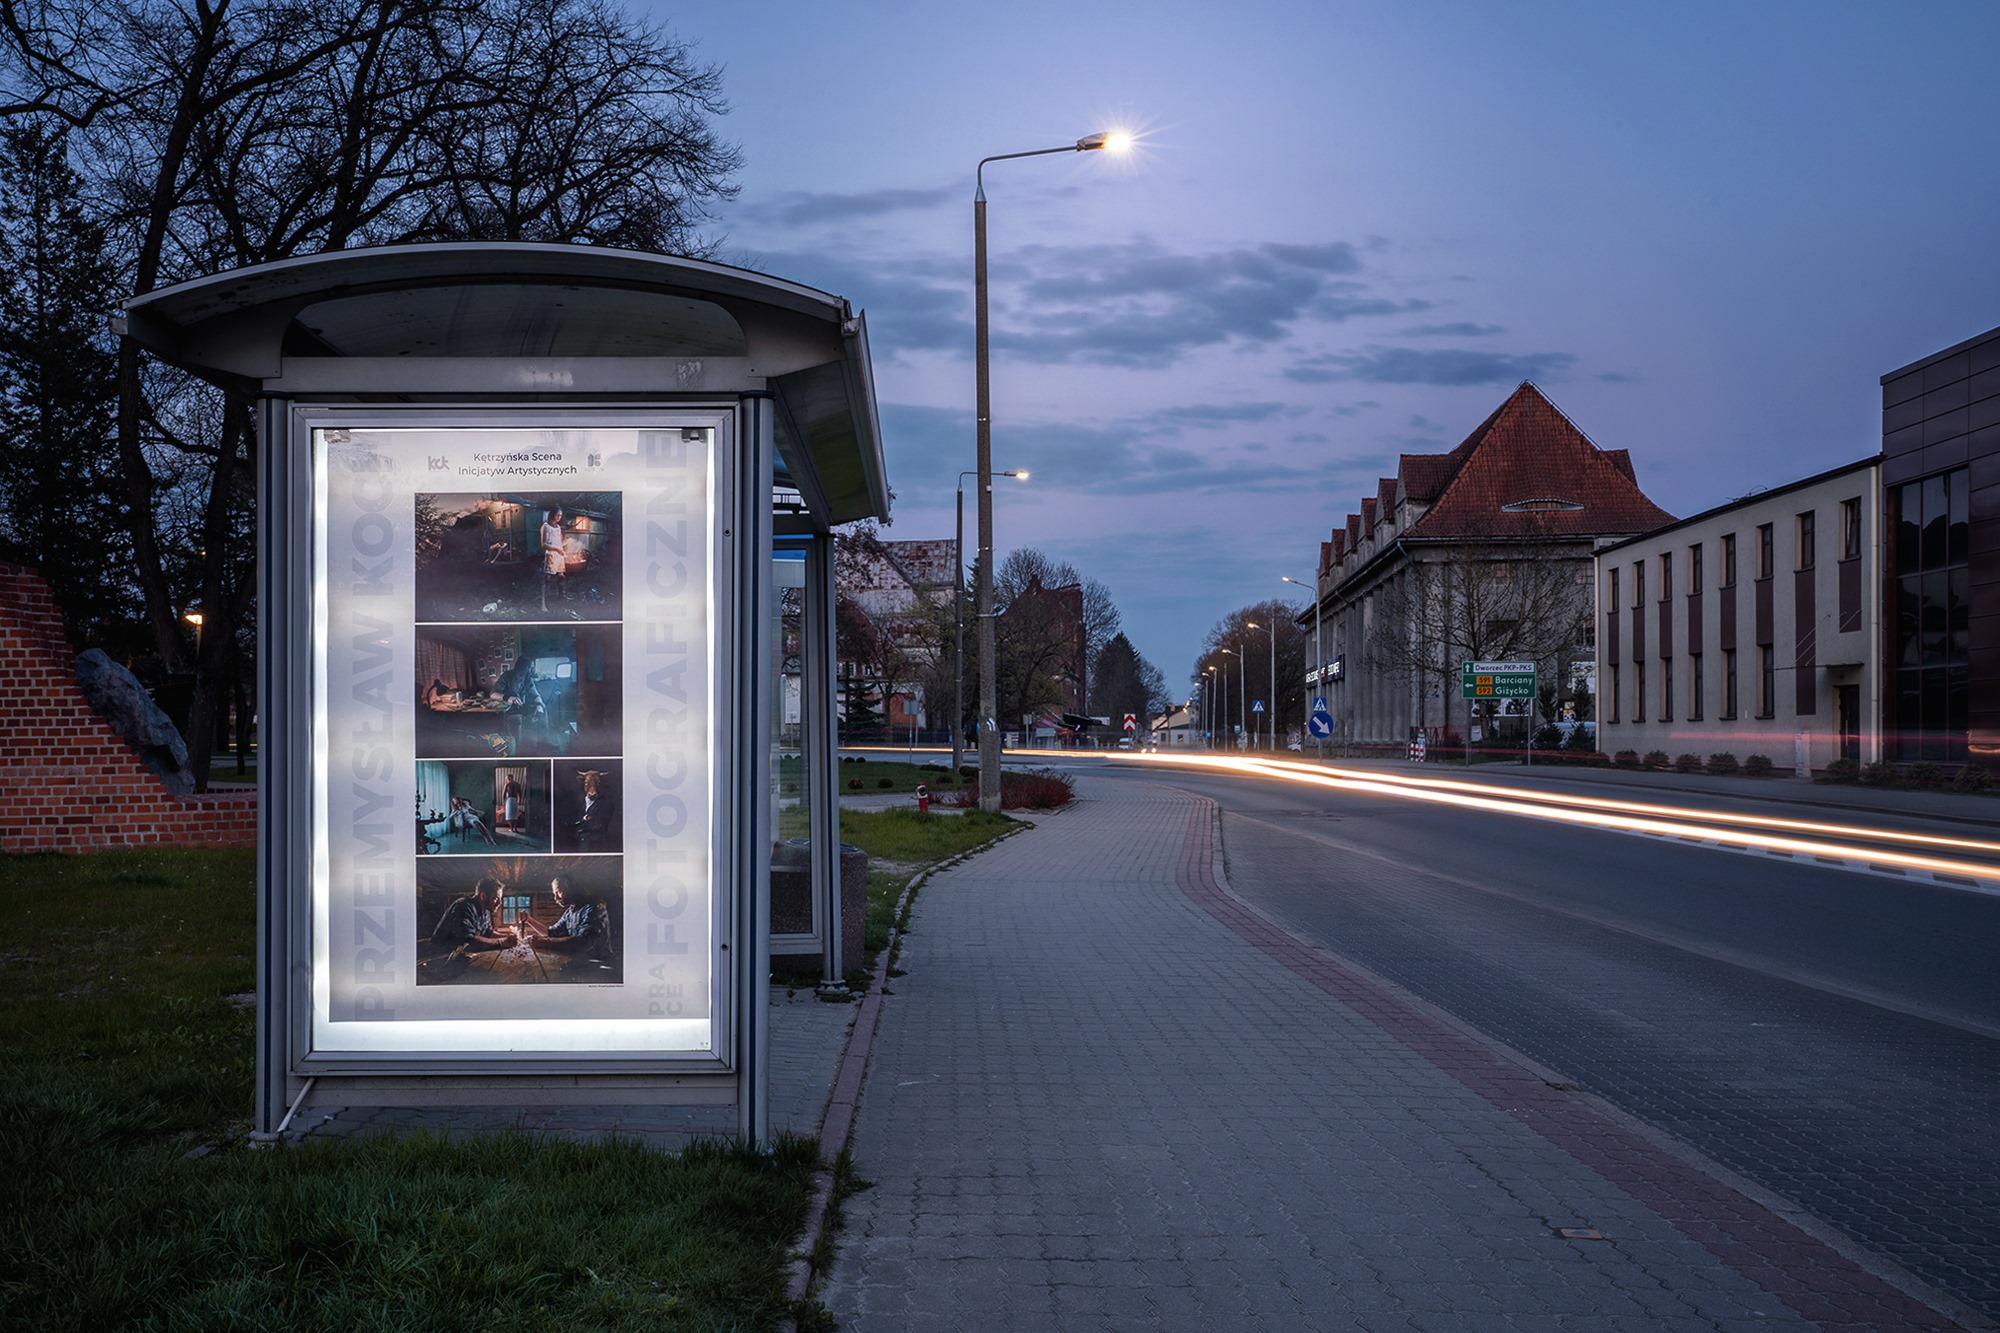 Rozmowa z autorem niesamowitych zdjęć, które zdobią ulice Kętrzyna